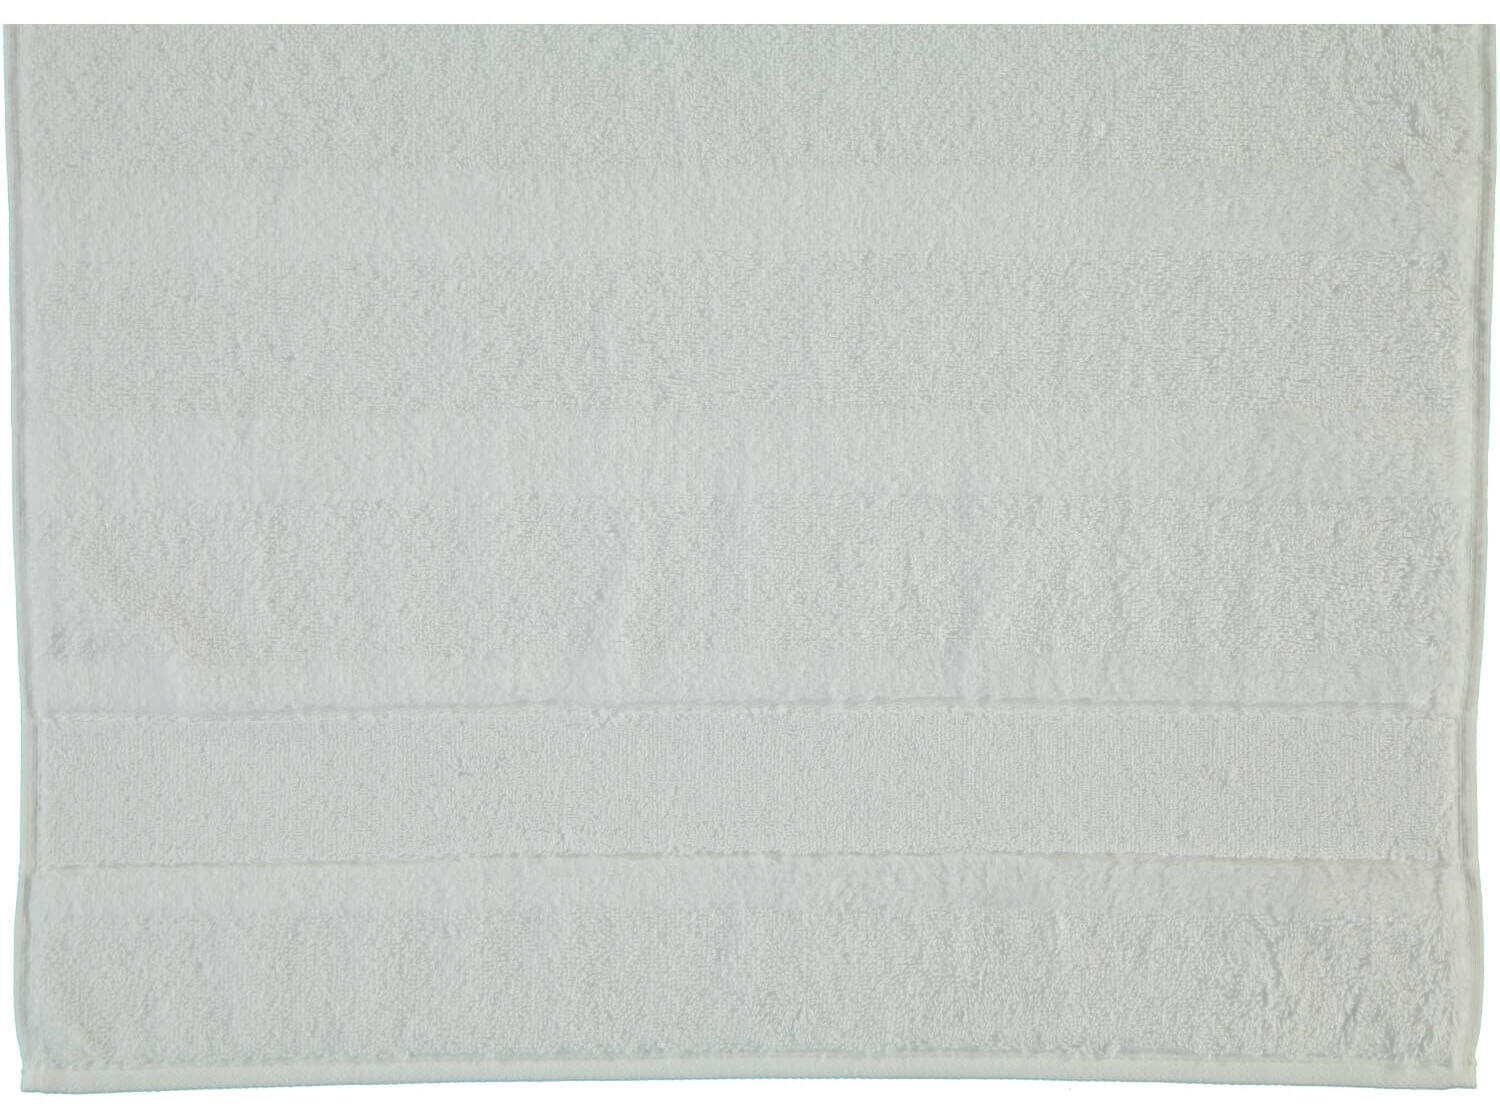 Хлопковое полотенце Noblesse Uni Weib ☞ Размер: 30 x 30 см